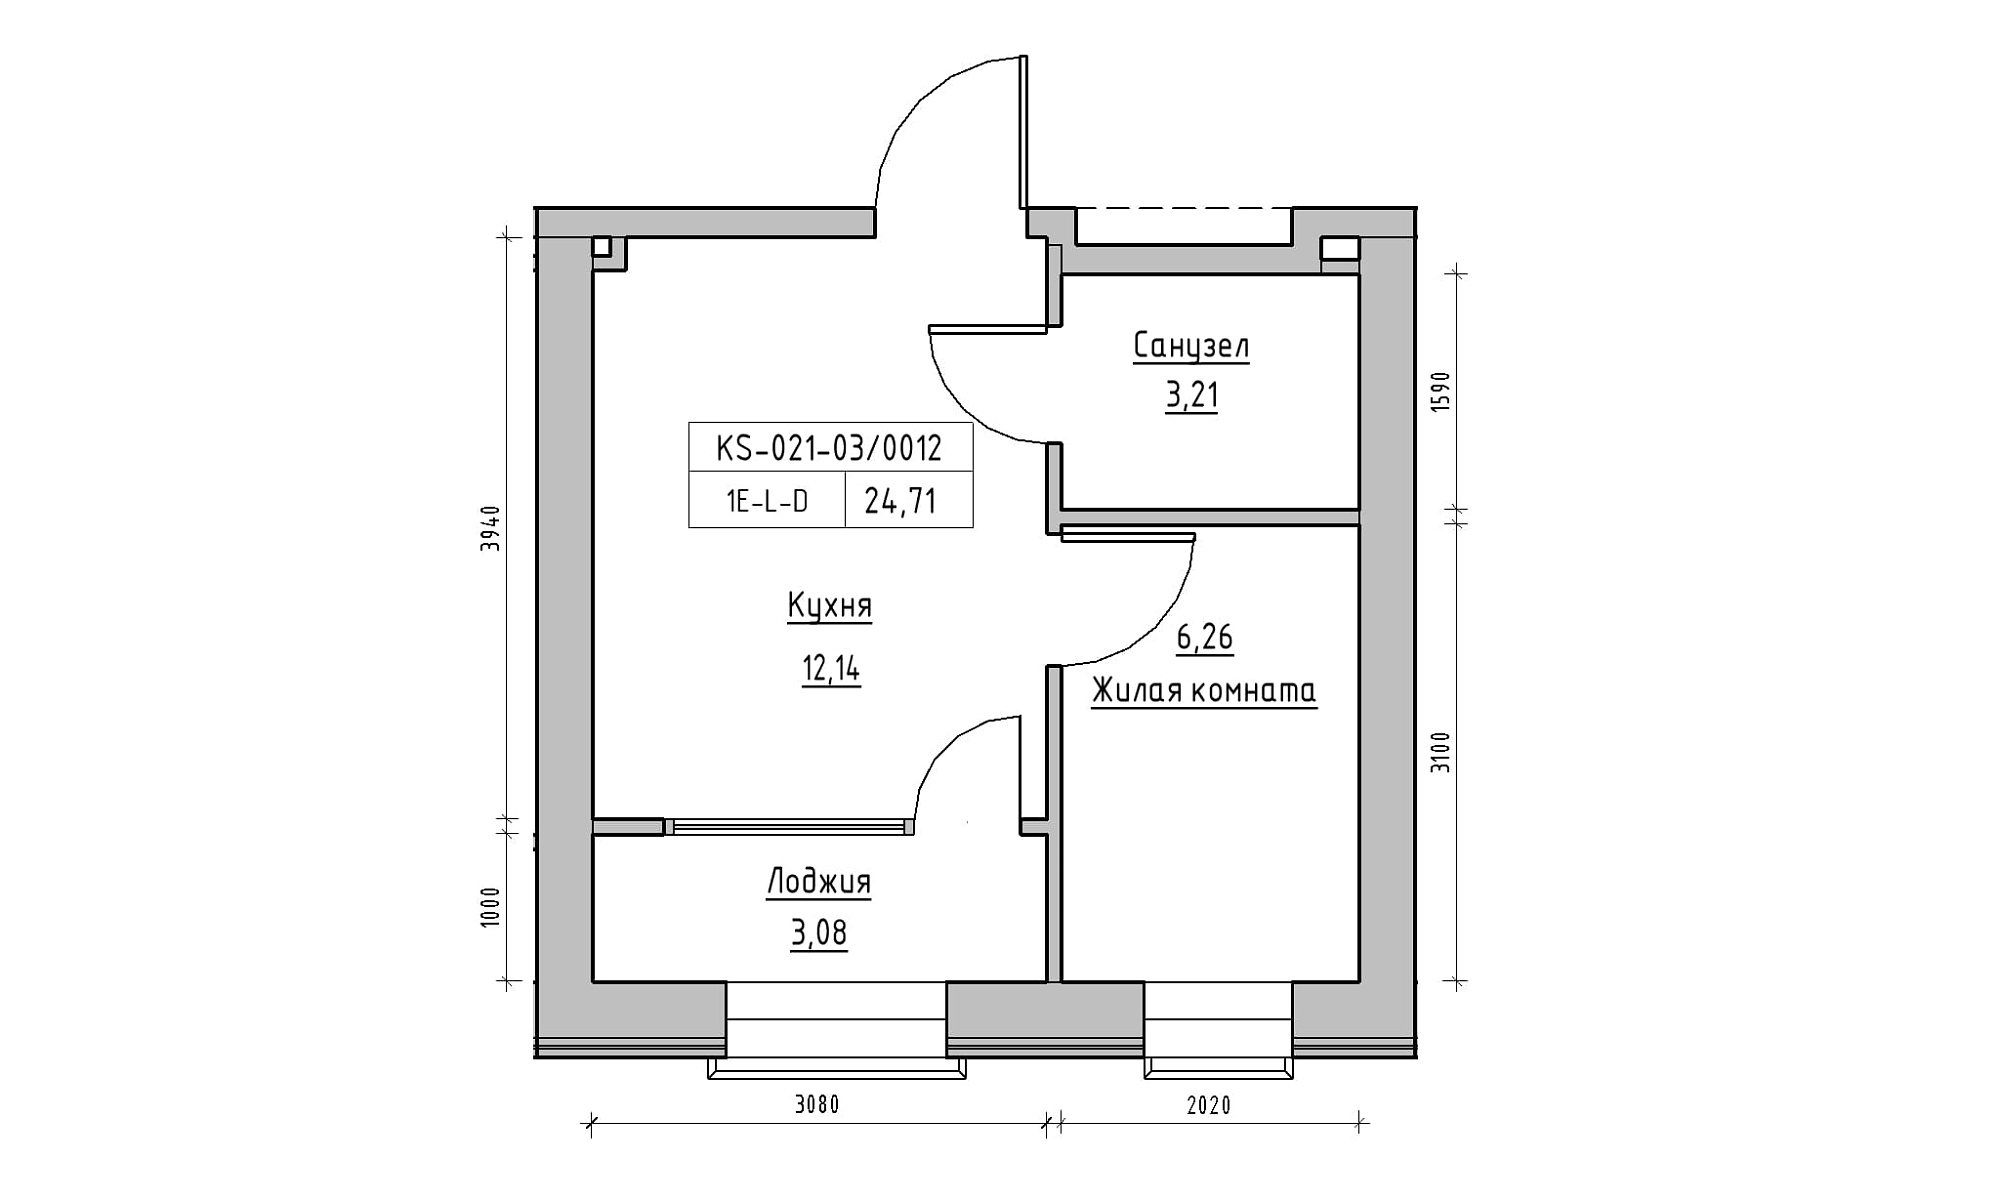 Планировка 1-к квартира площей 24.71м2, KS-021-03/0012.